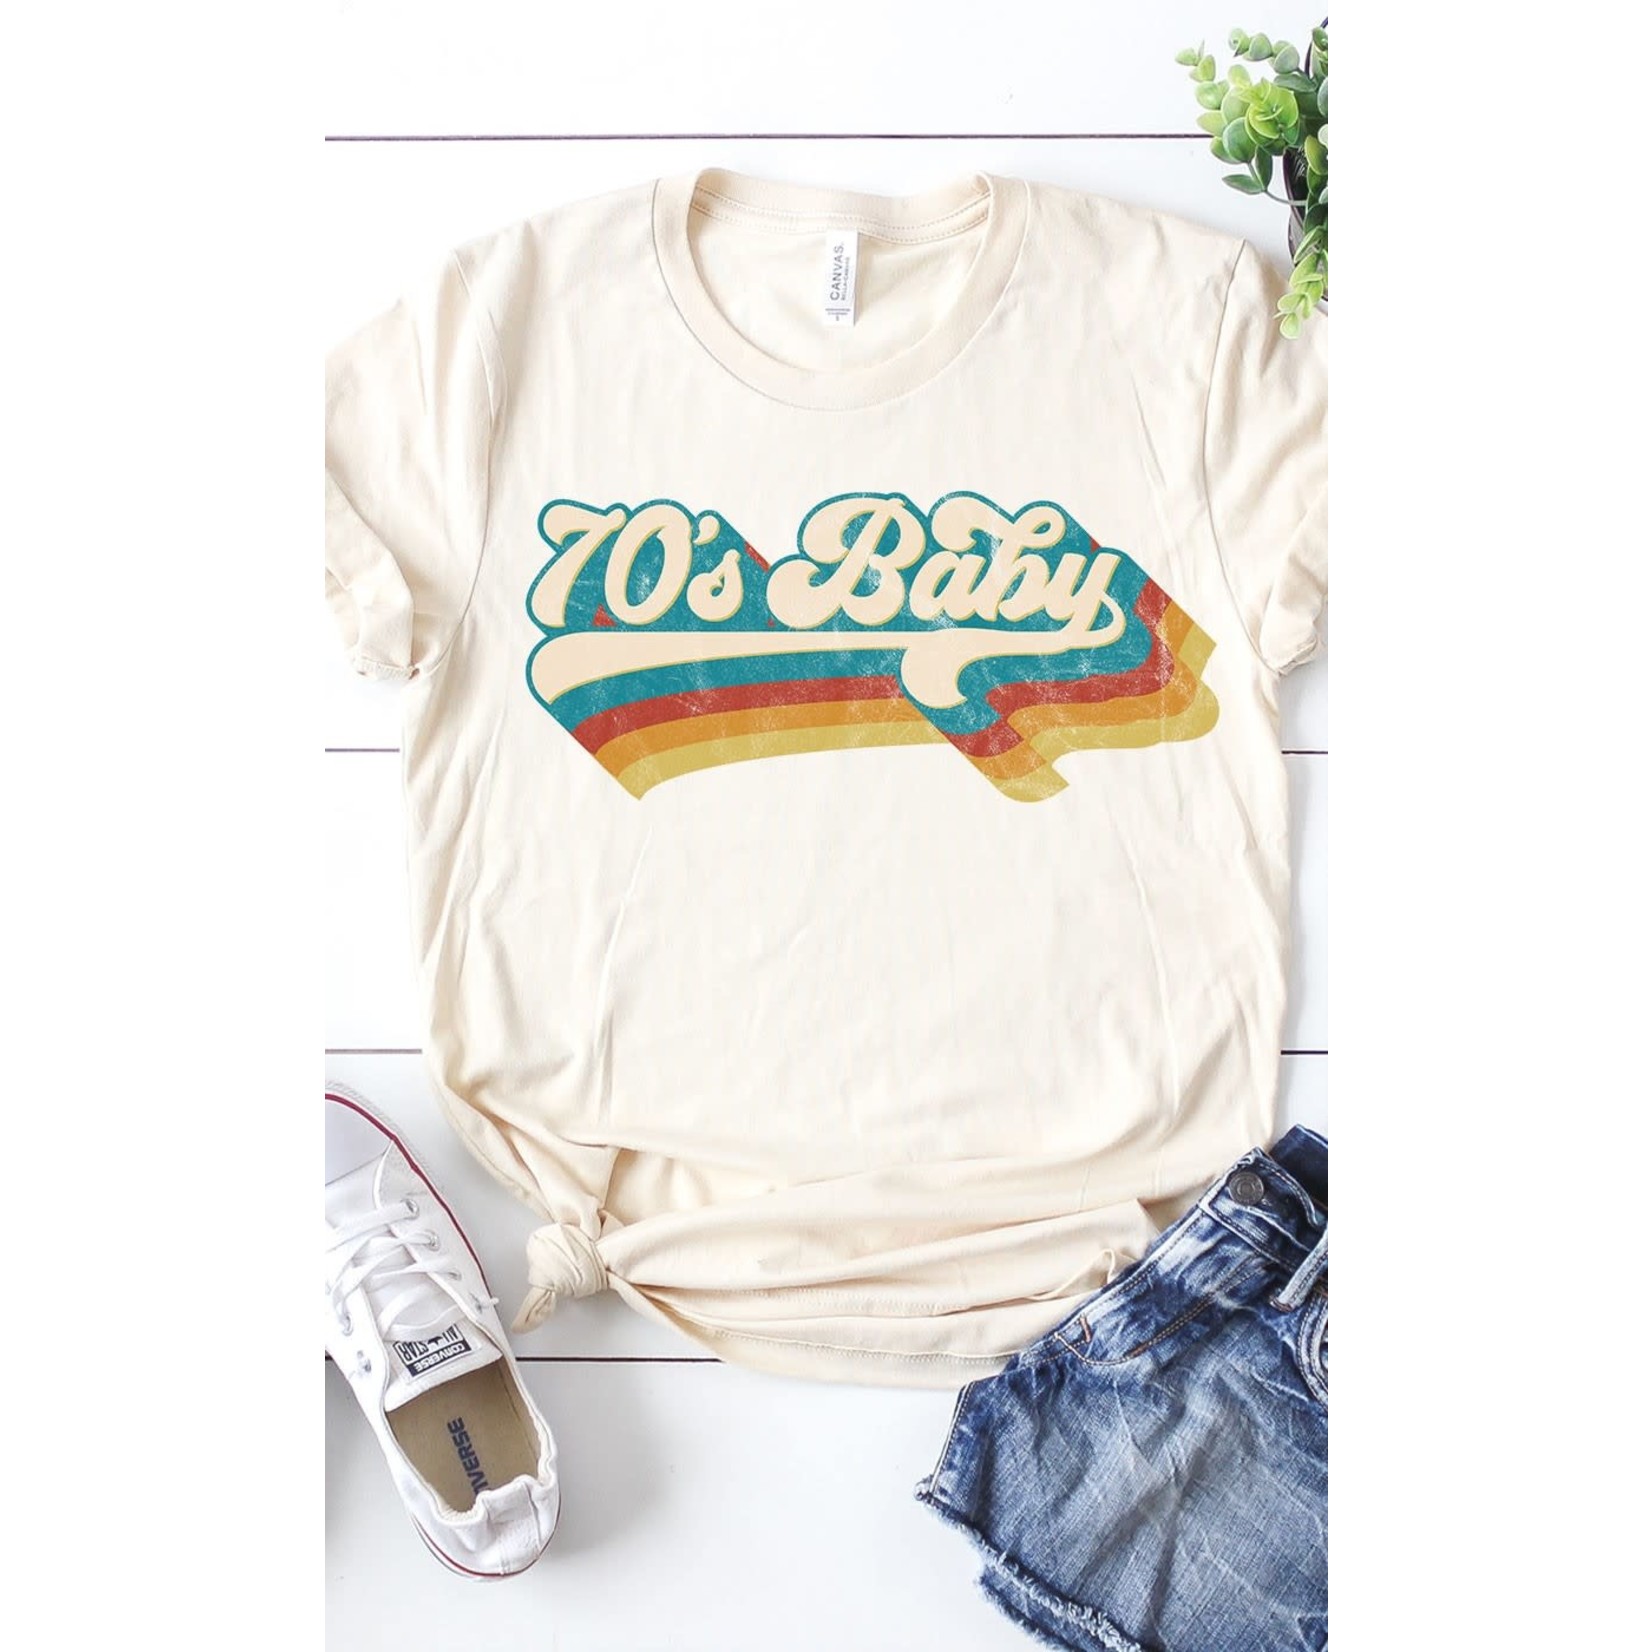 70's Baby T-Shirt